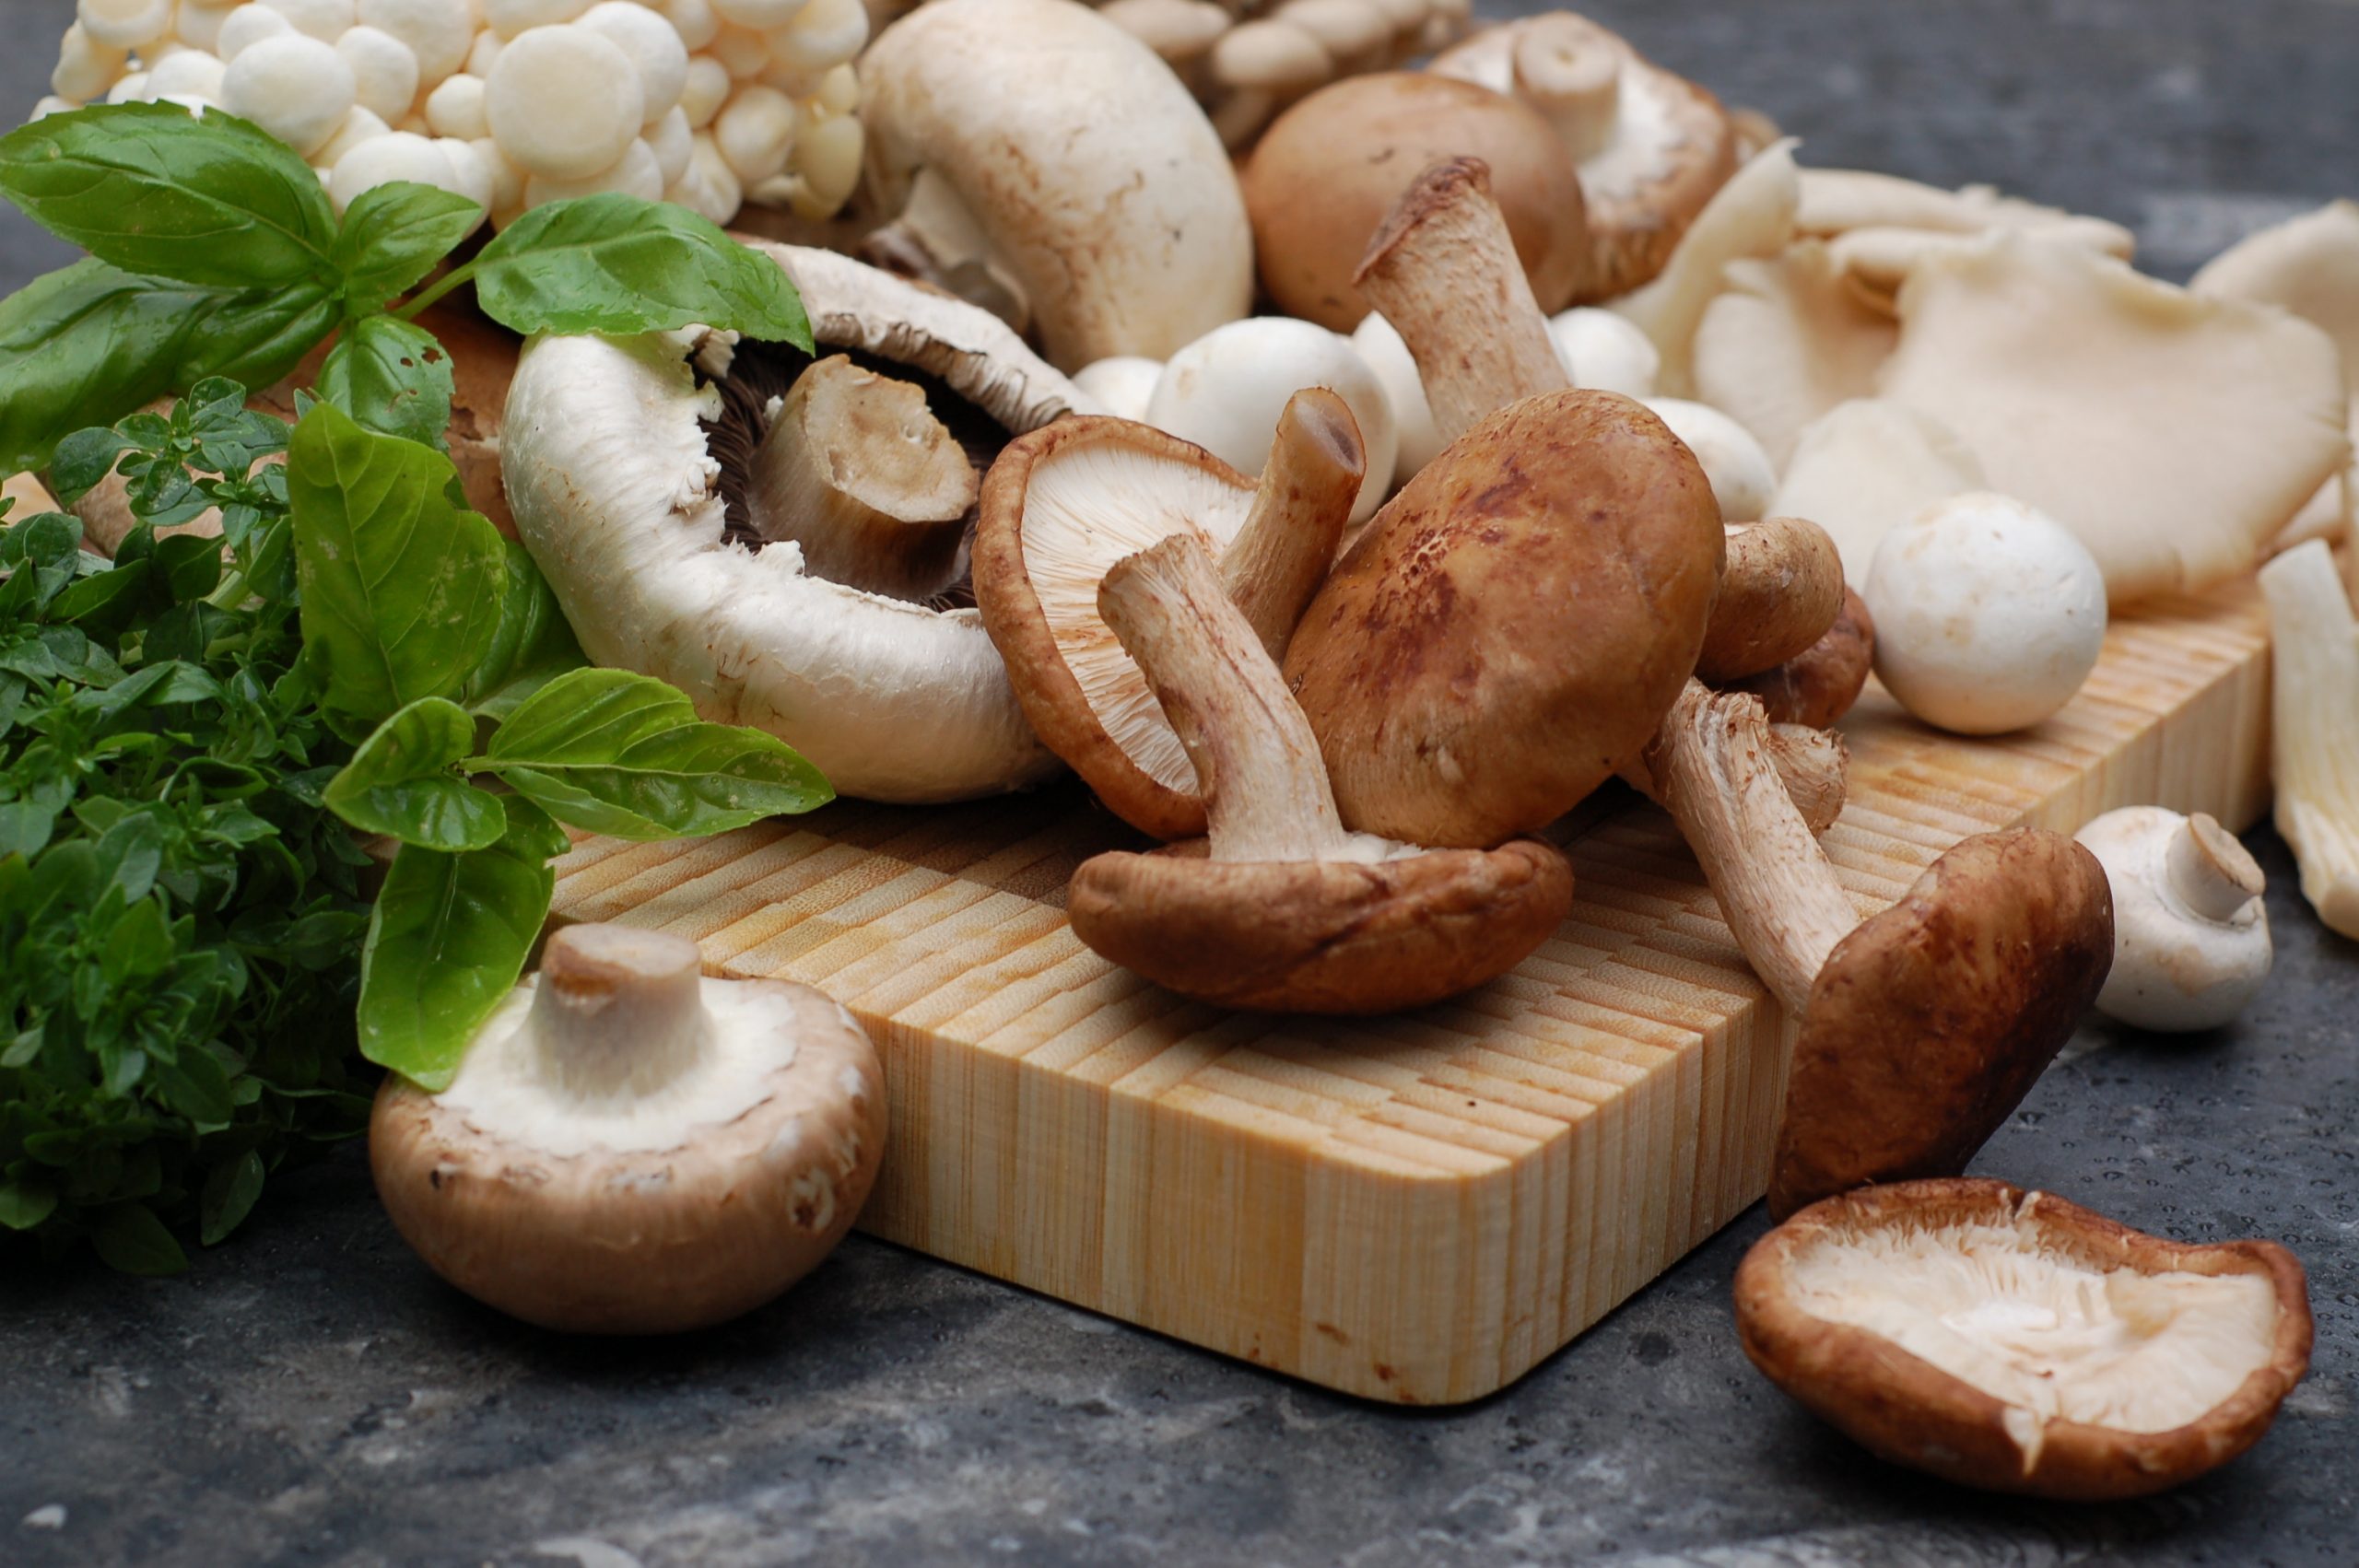 10 contorni con i funghi: ricette semplici e veloci